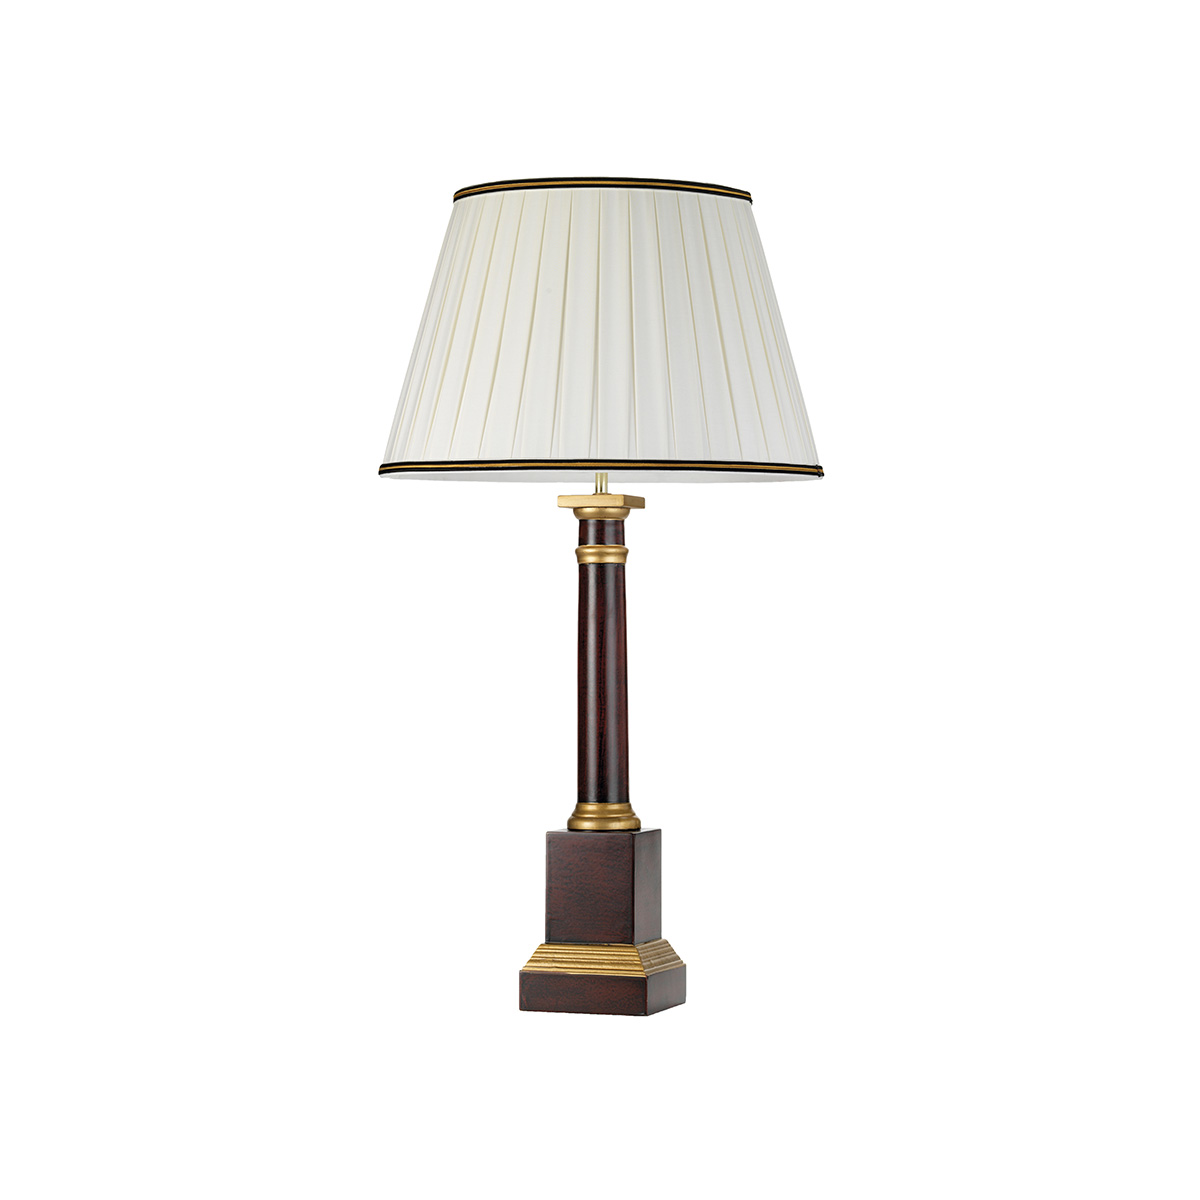 Настольная лампа DL-LOUVIERS-TL. Бренд: Elstead Lighting. Настольные лампы